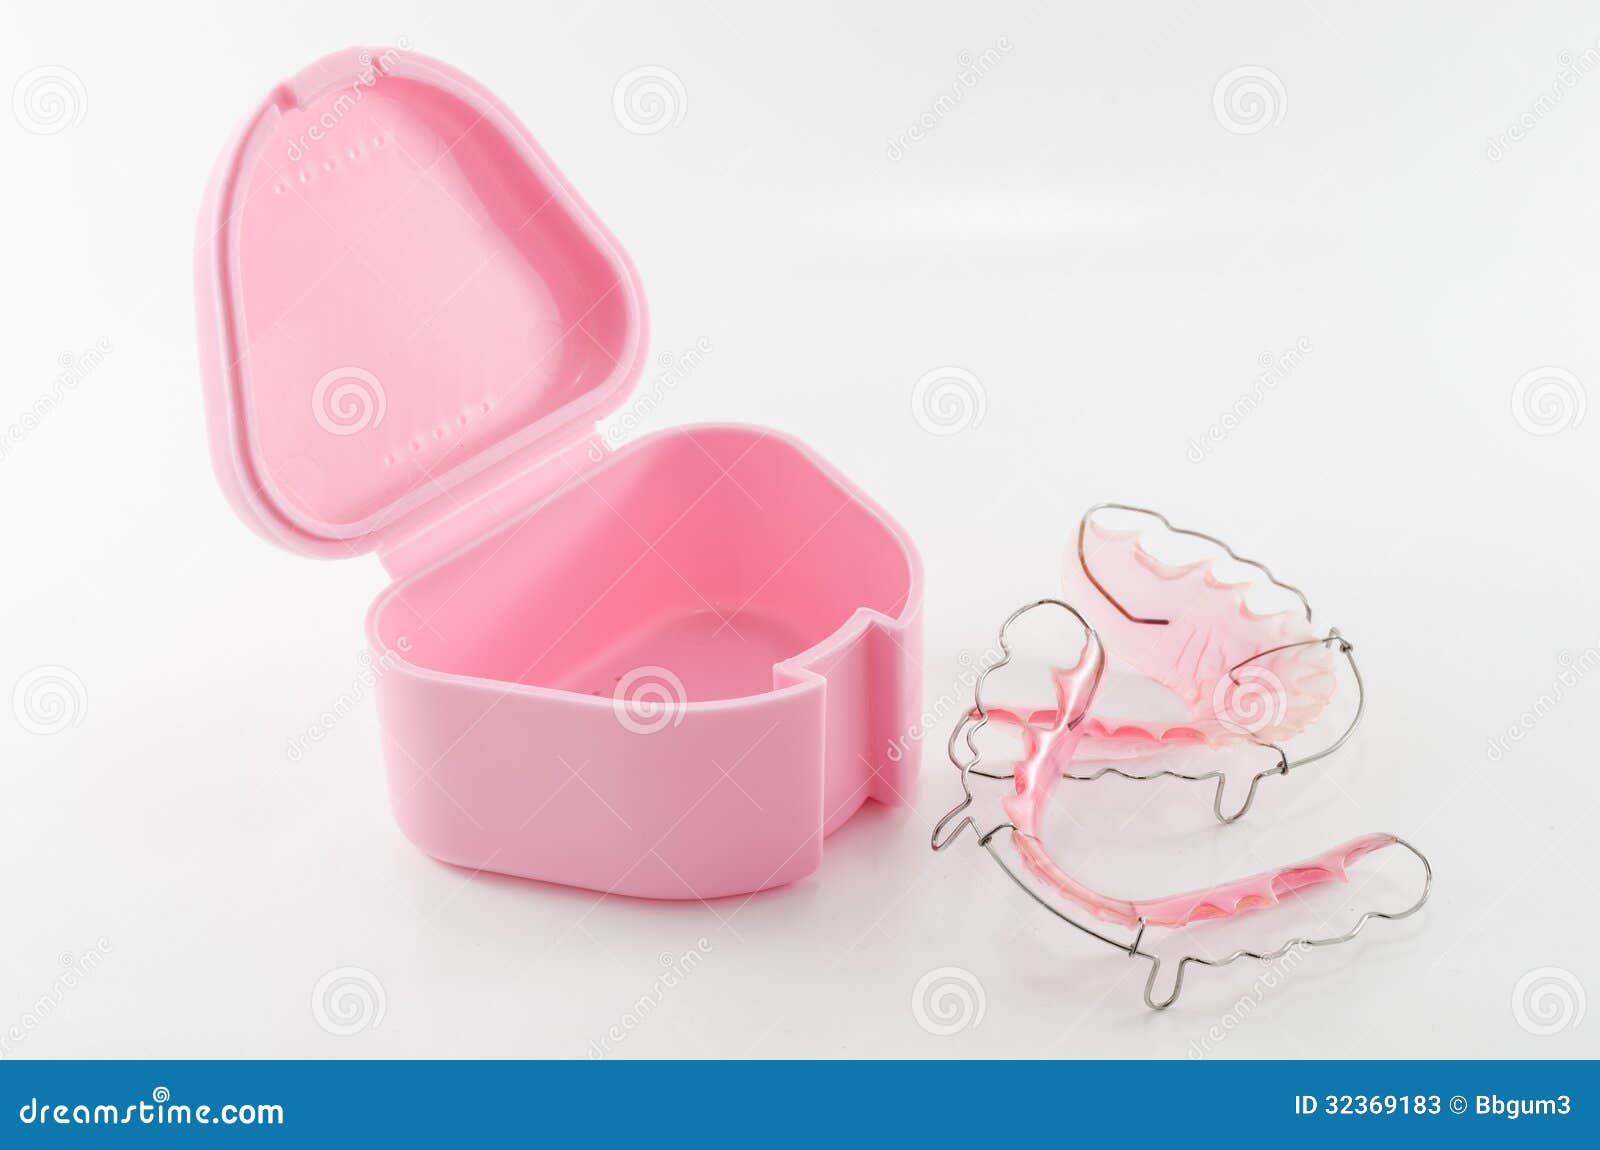 Tandsteunen met plastic geval op witte achtergrond. Tandsteunen of tandpal met klein roze plastic geval op witte achtergrond. Dit toestel is gebruik om tandboog na orthodontische behandeling te handhaven.